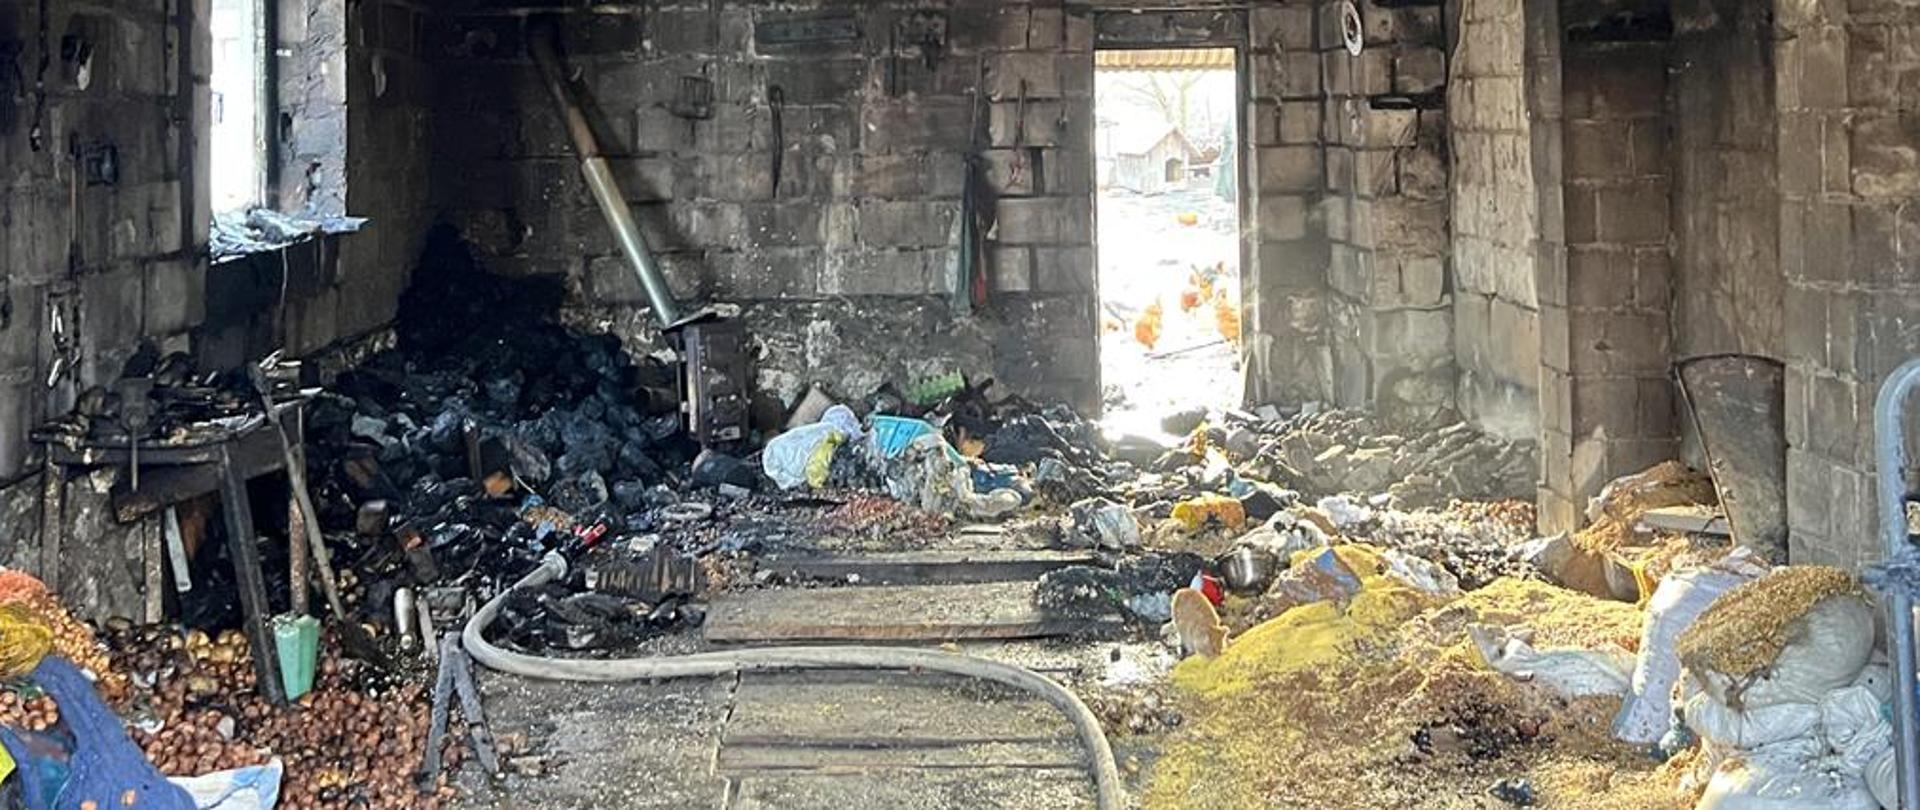 Zdjęcie przedstawia pogorzelisko w spalonym garażu.